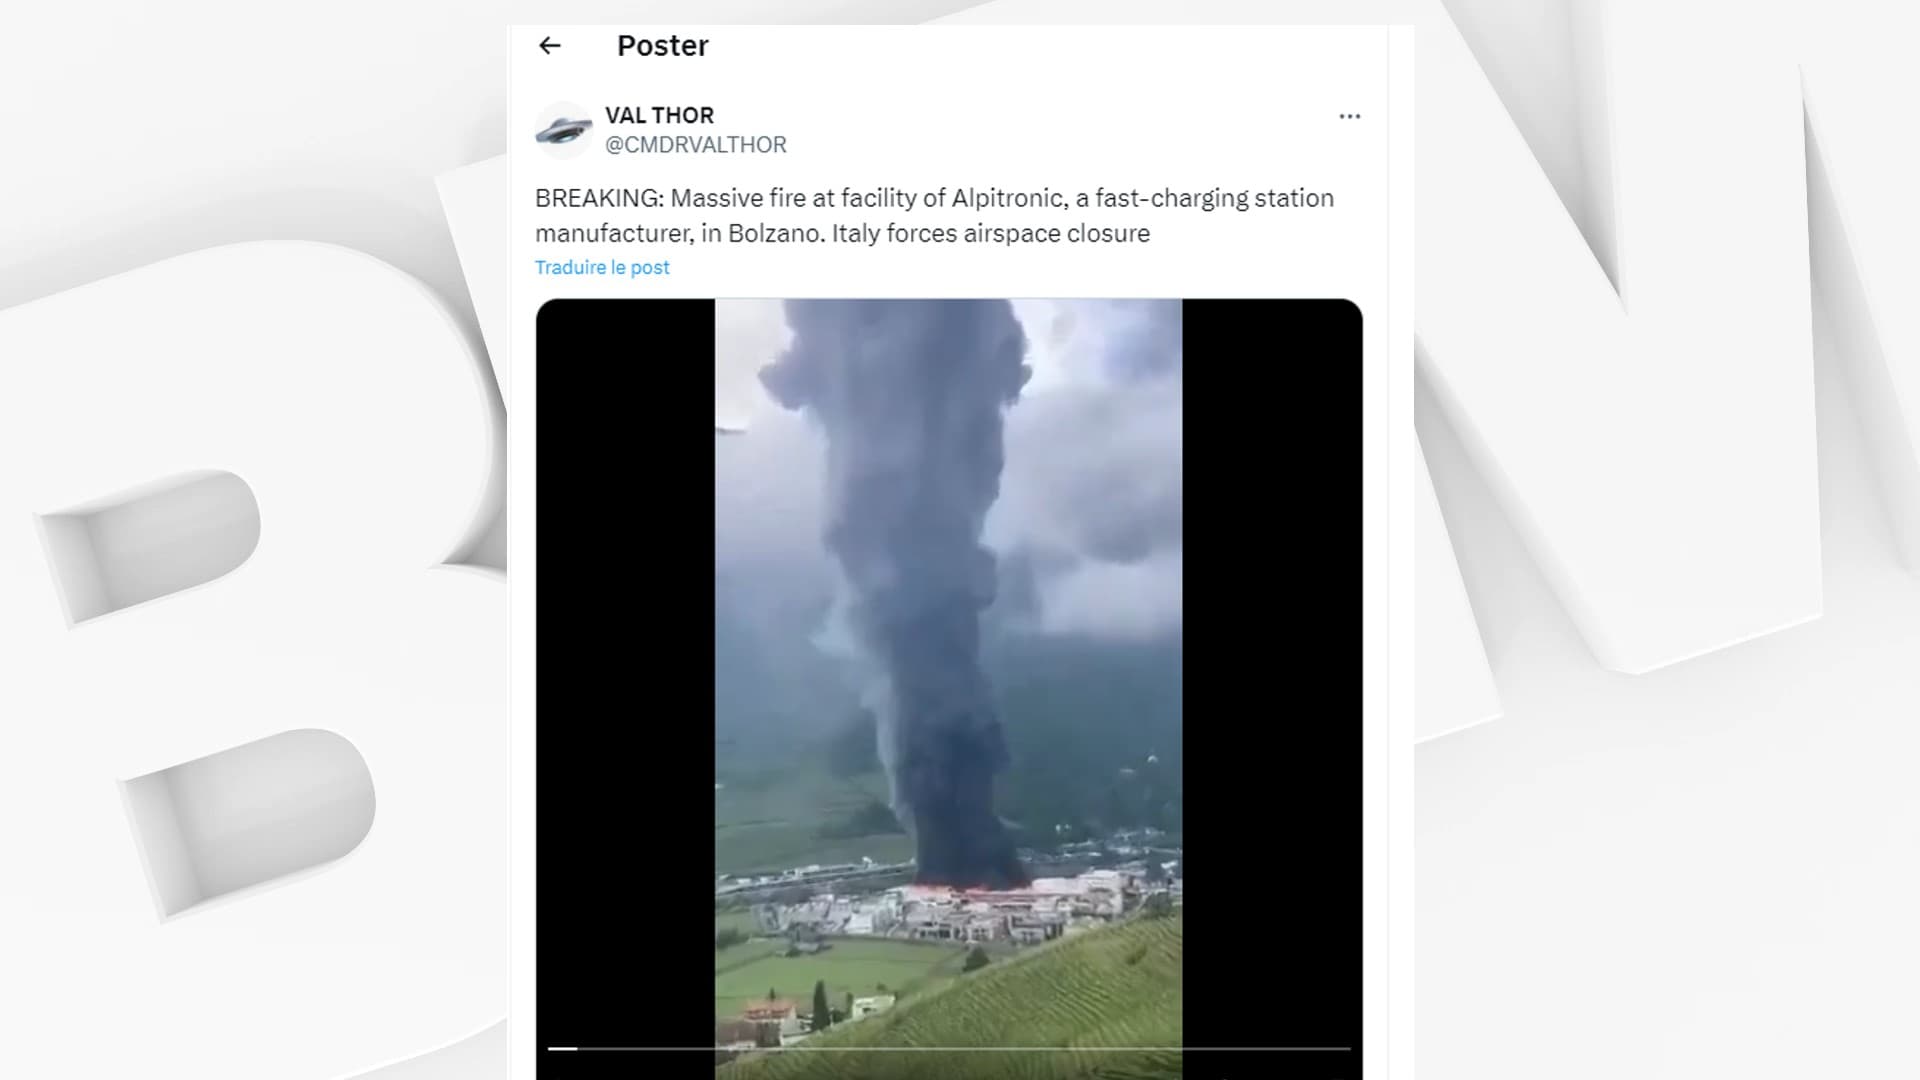 Immagini impressionanti dell’incendio in una fabbrica nel nord del Paese